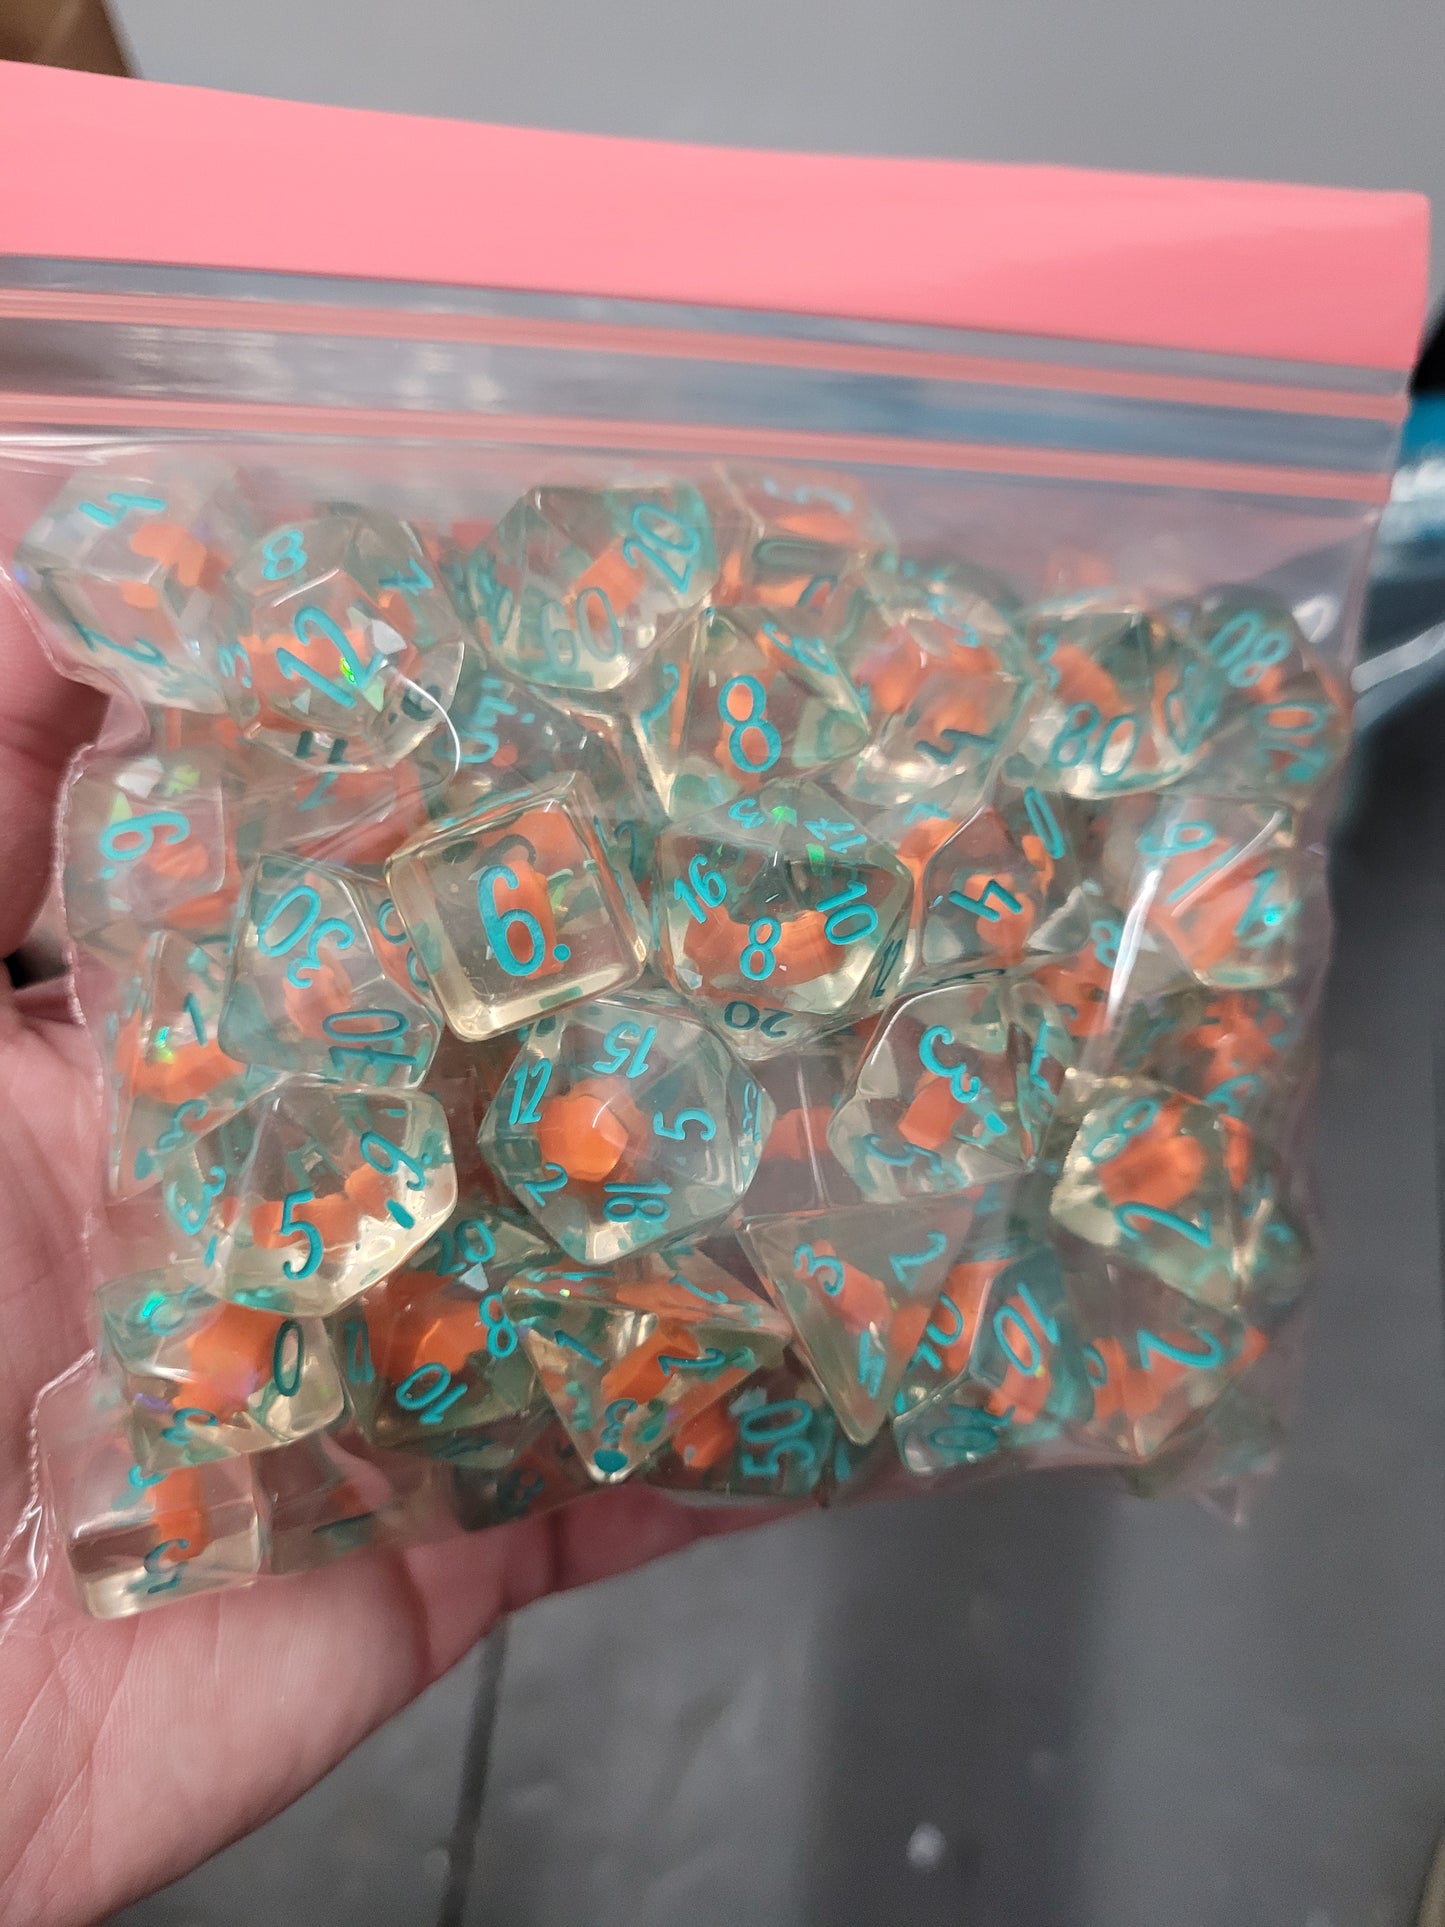 B grade bulk bag of Keyfish soft-edge dice